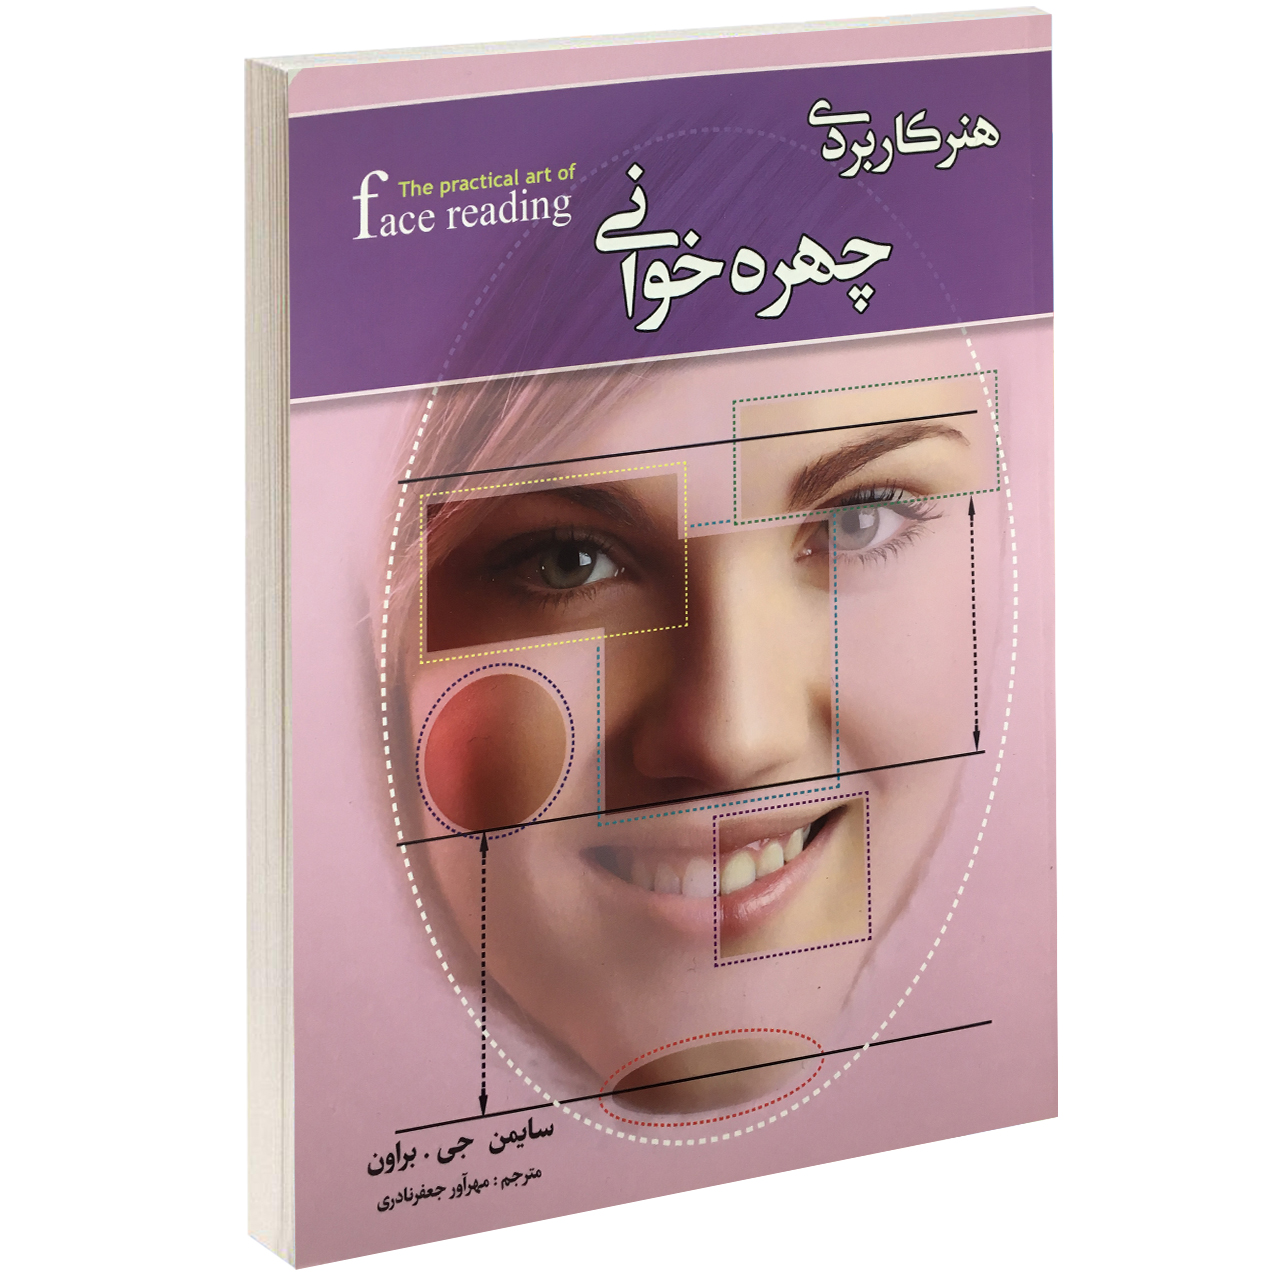 کتاب هنر کاربردی چهره خوانی اثر سایمن جی. براون